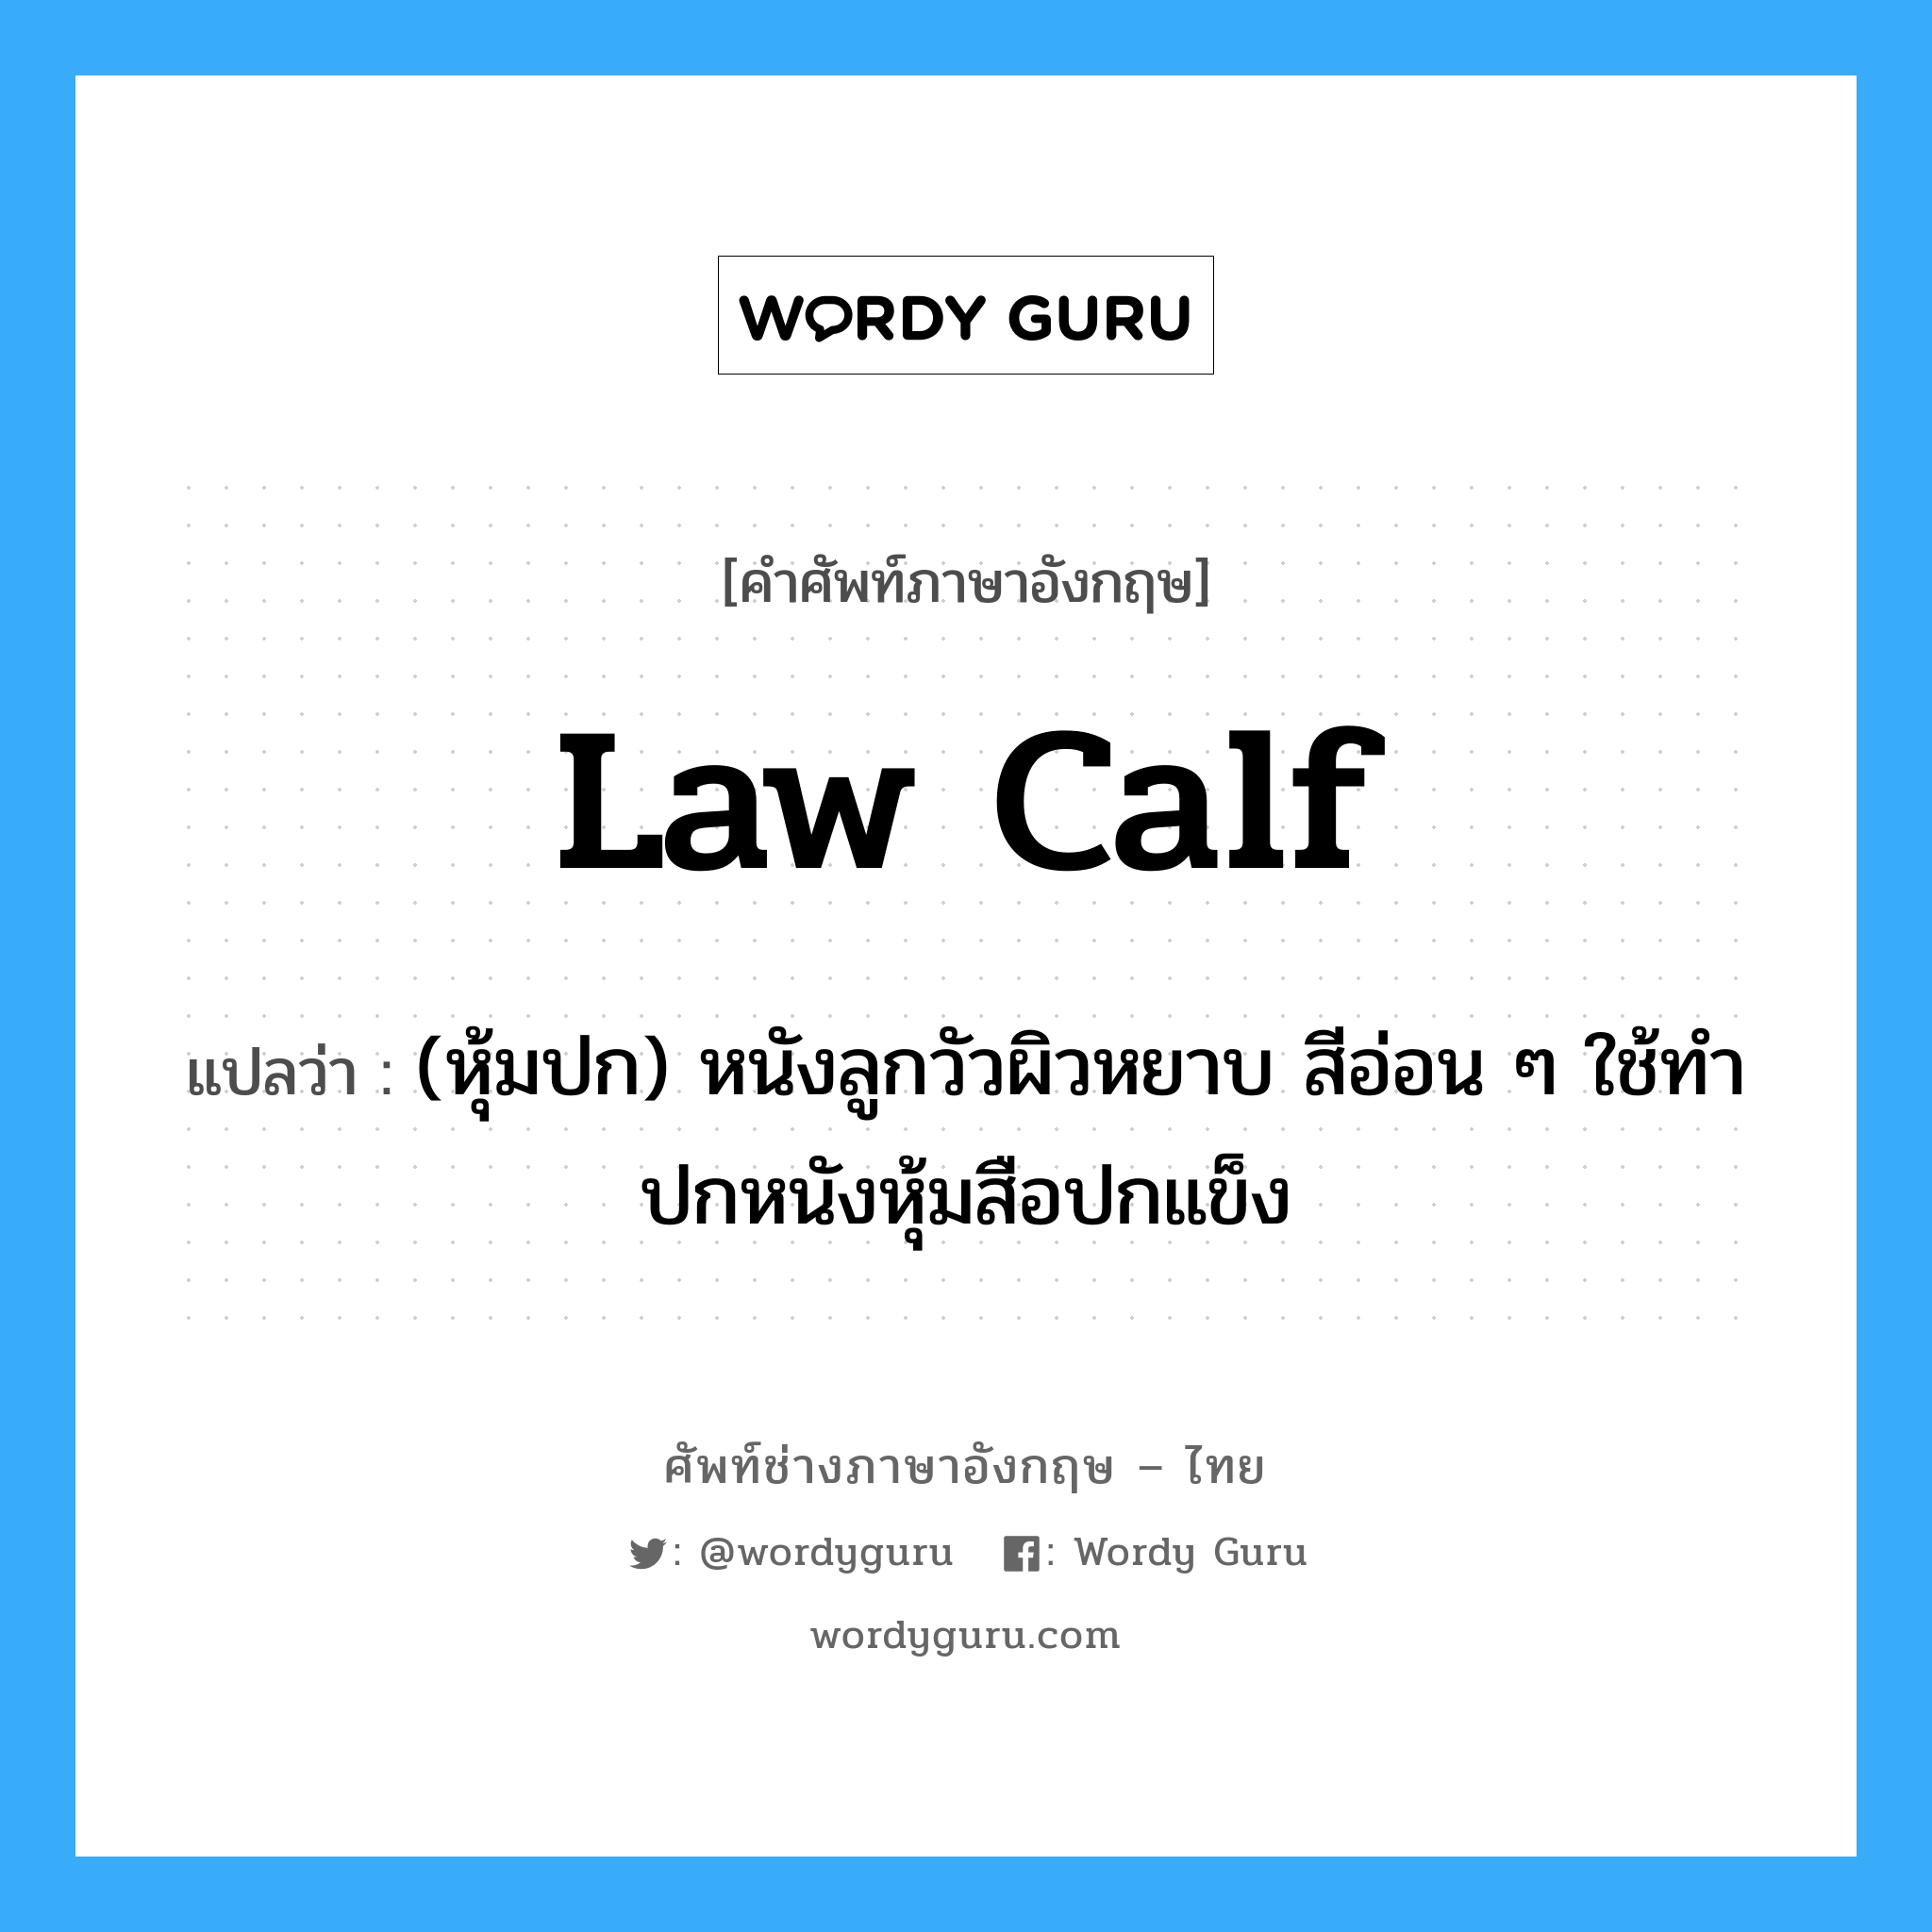 law calf แปลว่า?, คำศัพท์ช่างภาษาอังกฤษ - ไทย law calf คำศัพท์ภาษาอังกฤษ law calf แปลว่า (หุ้มปก) หนังลูกวัวผิวหยาบ สีอ่อน ๆ ใช้ทำปกหนังหุ้มสือปกแข็ง